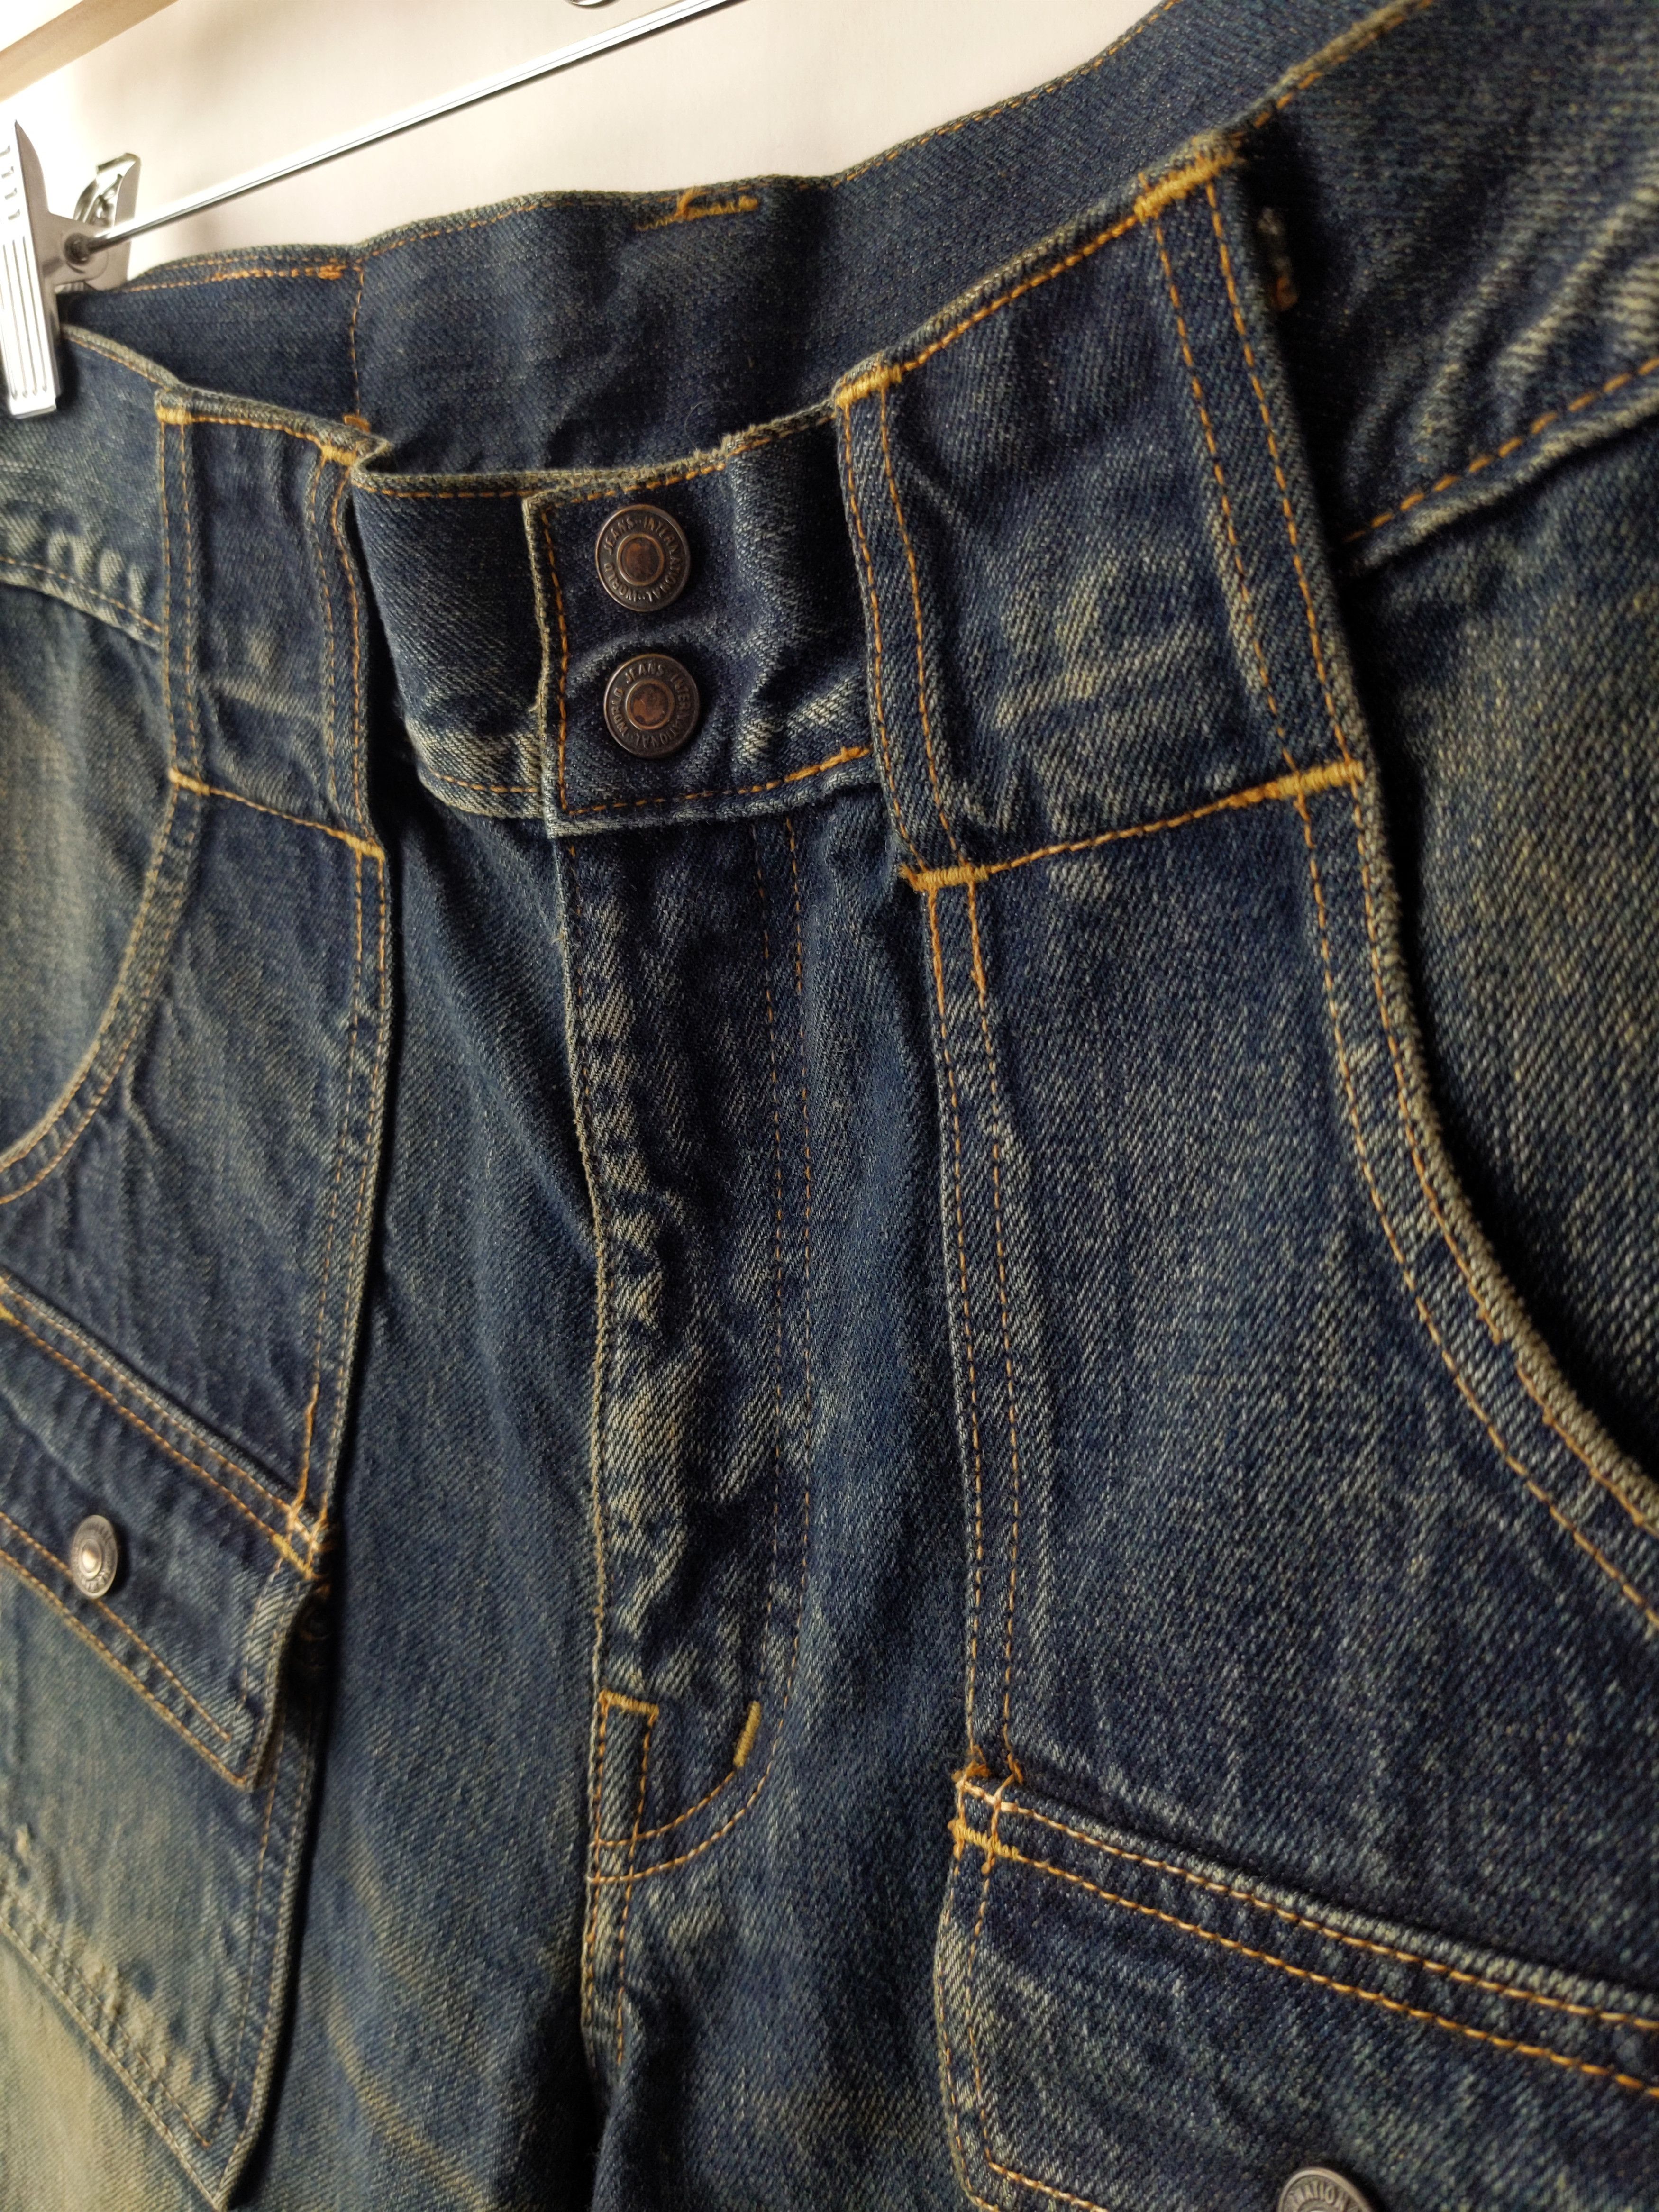 Kapital KAPITAL KOUNTRY Sashiko Boro Bush Pants Jeans Denim US S Size US 29 - 4 Thumbnail